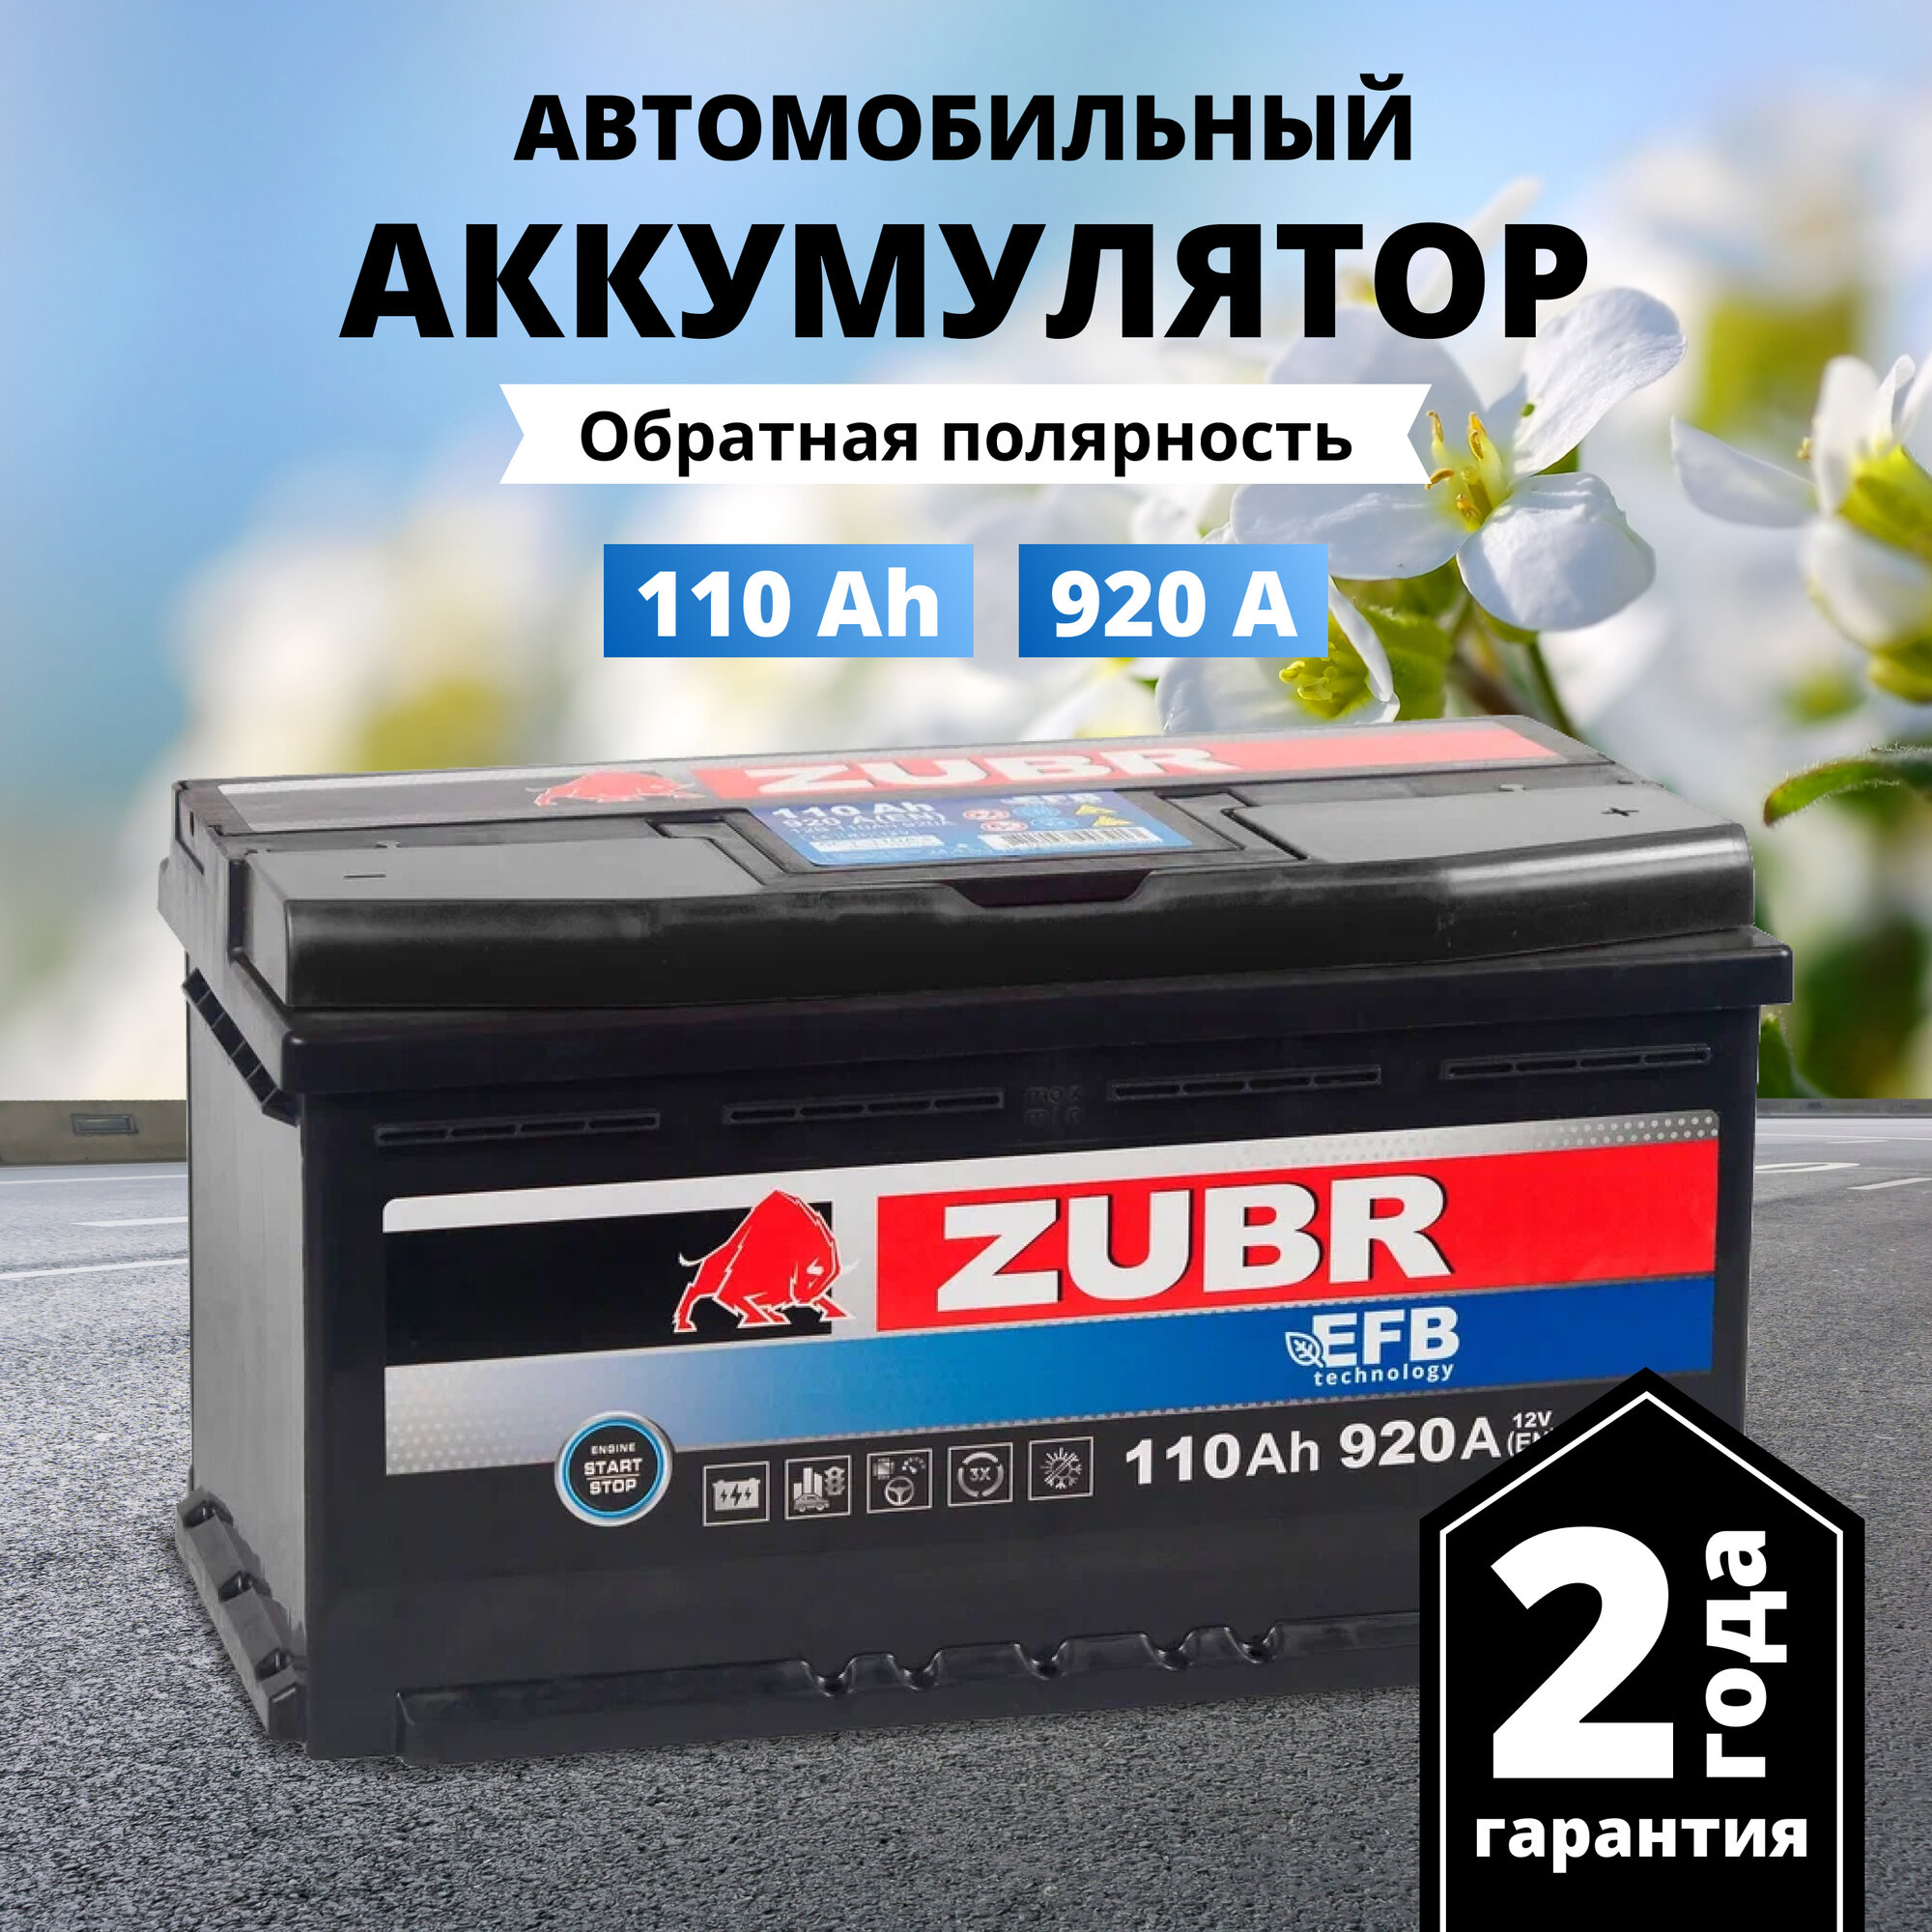 Аккумулятор автомобильный ZUBR EFB 110 Ah 920 A обратная полярность 353x175x190